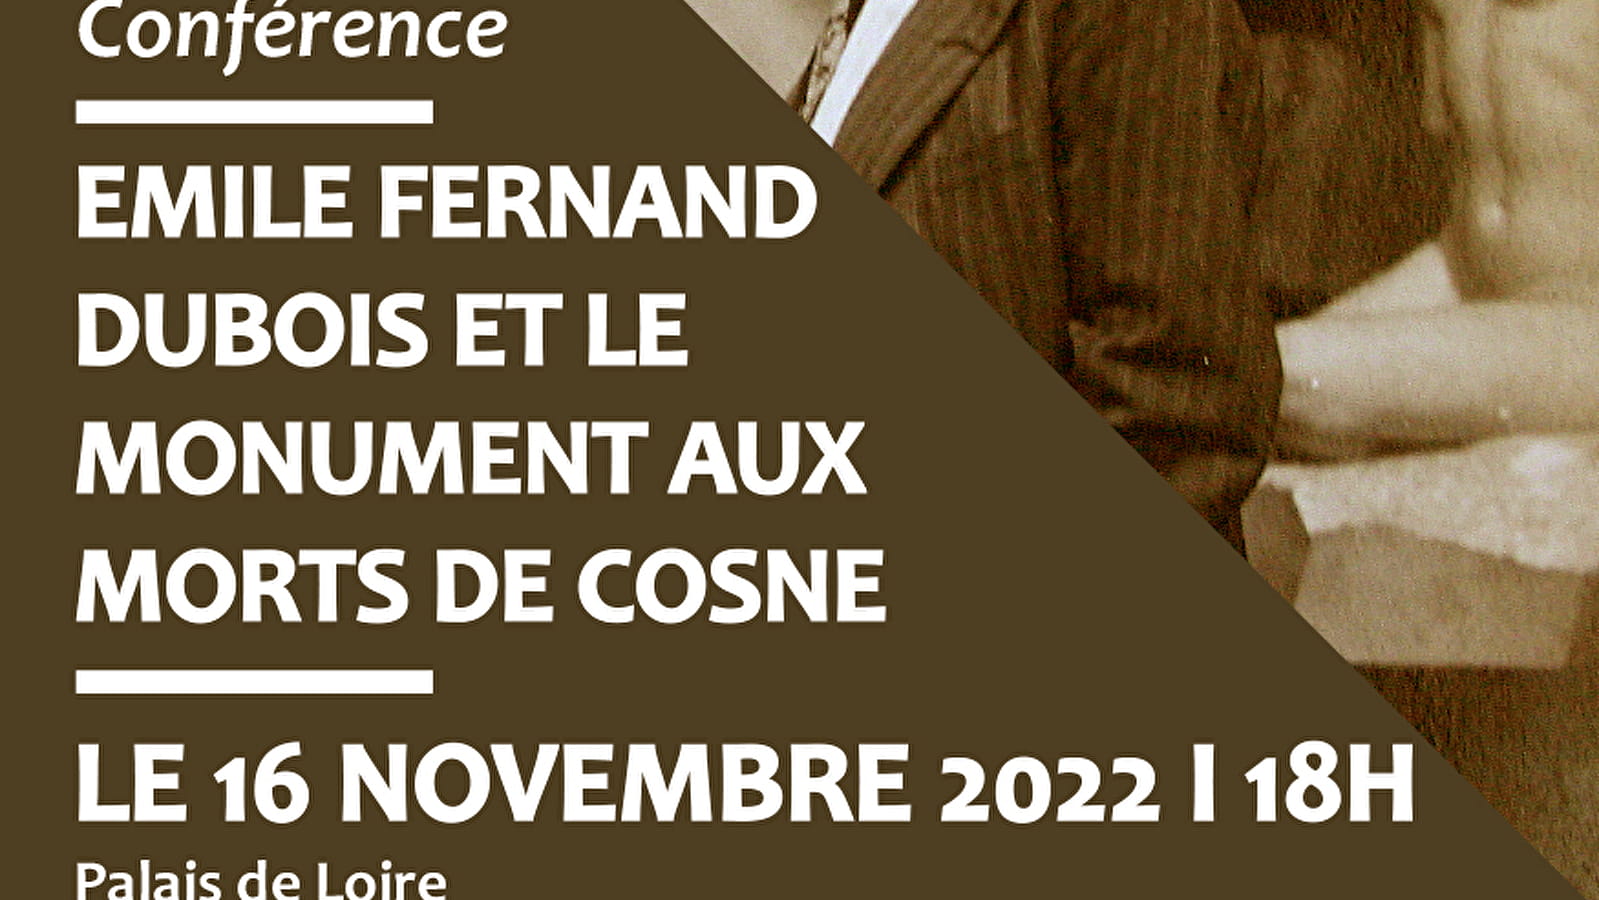 Conférence : Fernand-Dubois et les monuments aux morts de Cosne

